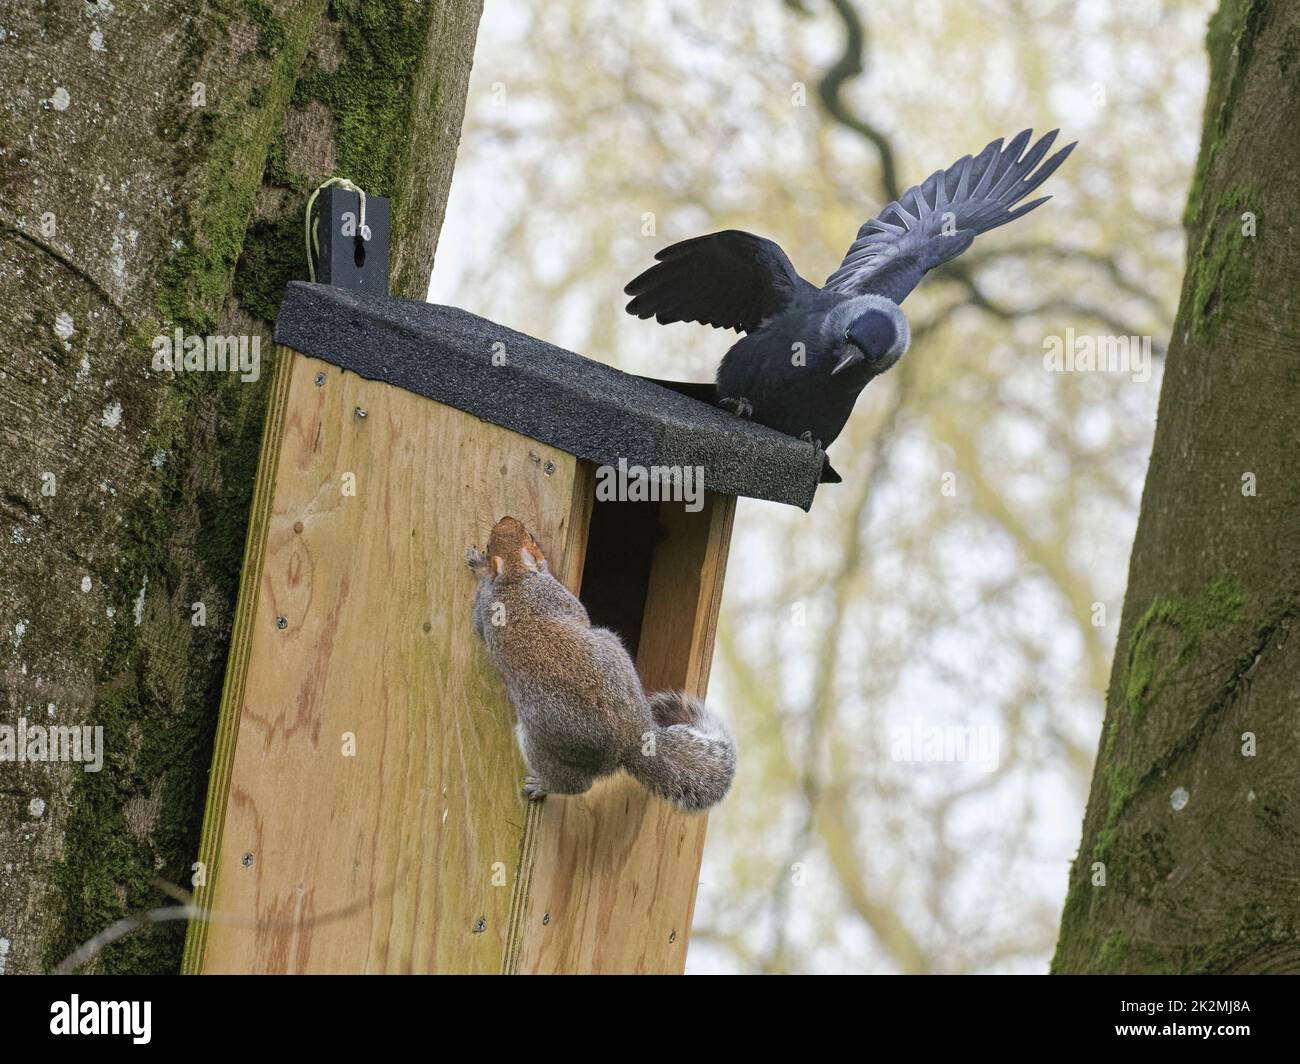 Jackdaw (Corvus monedula) persiguiendo una ardilla gris (Sciurus carolinensis) como emerge de una caja de nido en la que el pájaro quiere anidar, Wiltshire, Reino Unido, marzo. Foto de stock